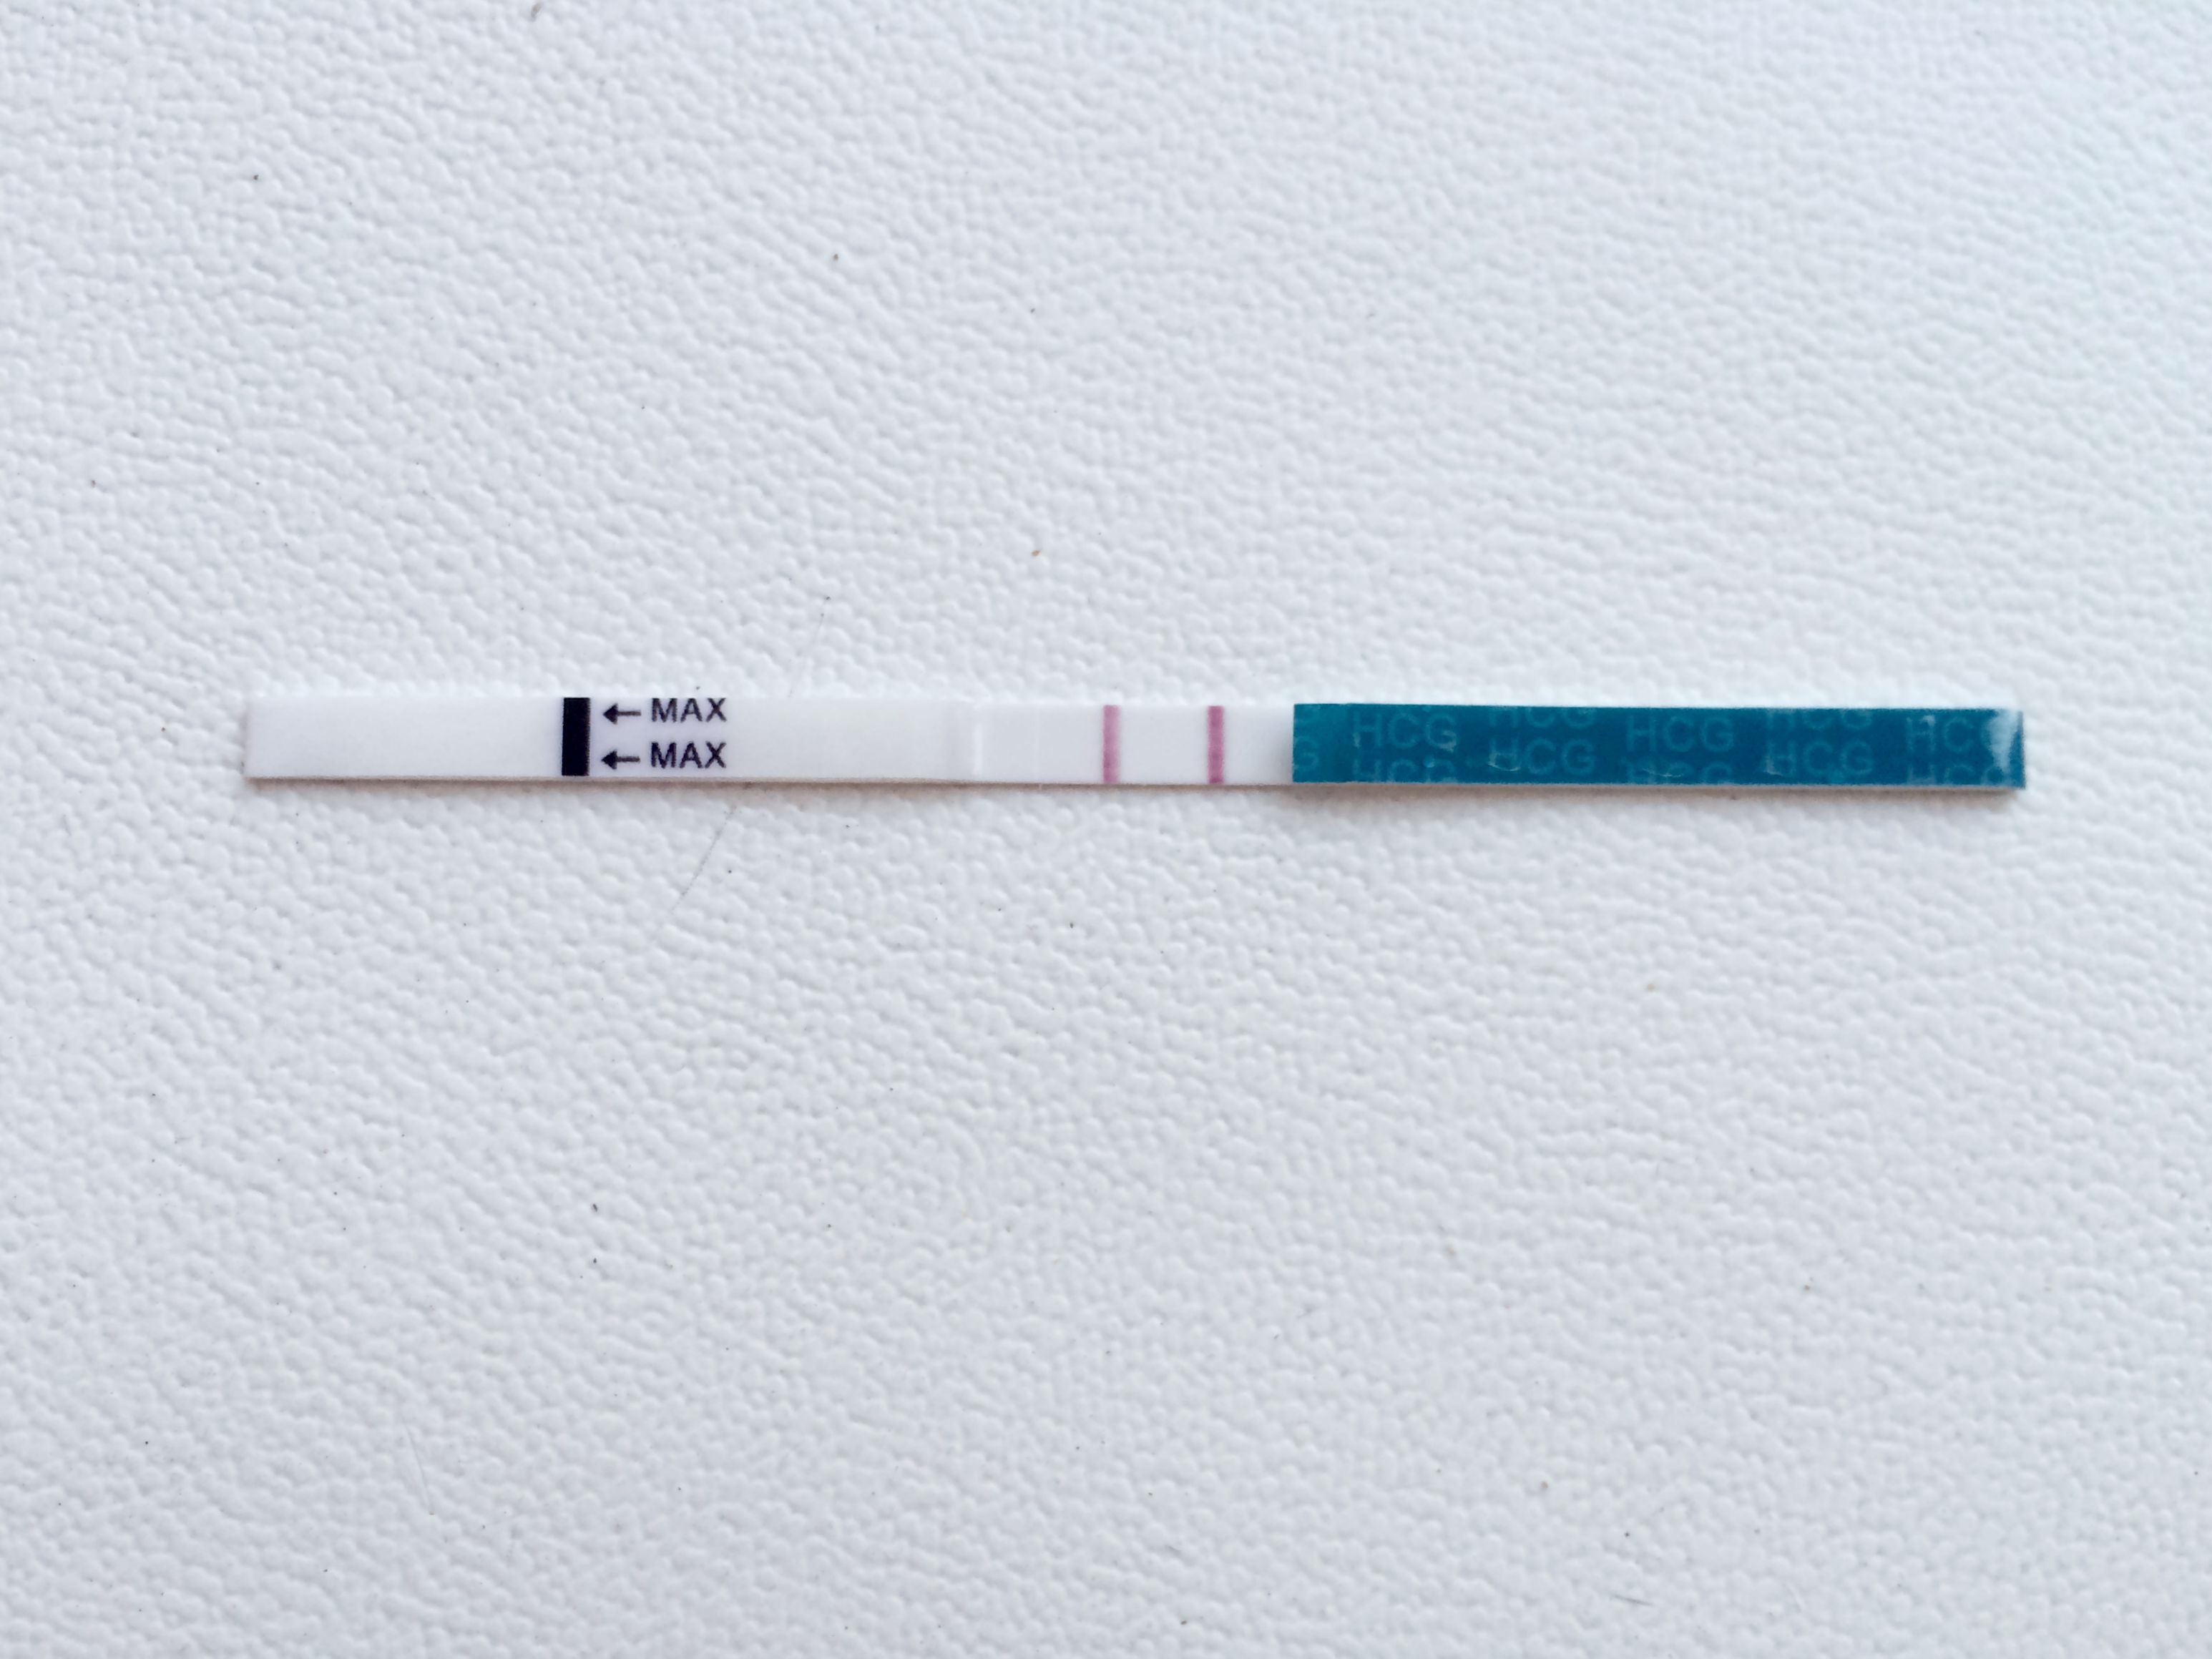 Положительный тест на беременность как выглядит фото. Тест на беременность 2 poloska. Тест на беременность с 2 тест полосками. Тест HCG 2 полоски. Тест полоски на беременность фото 2 полоски.